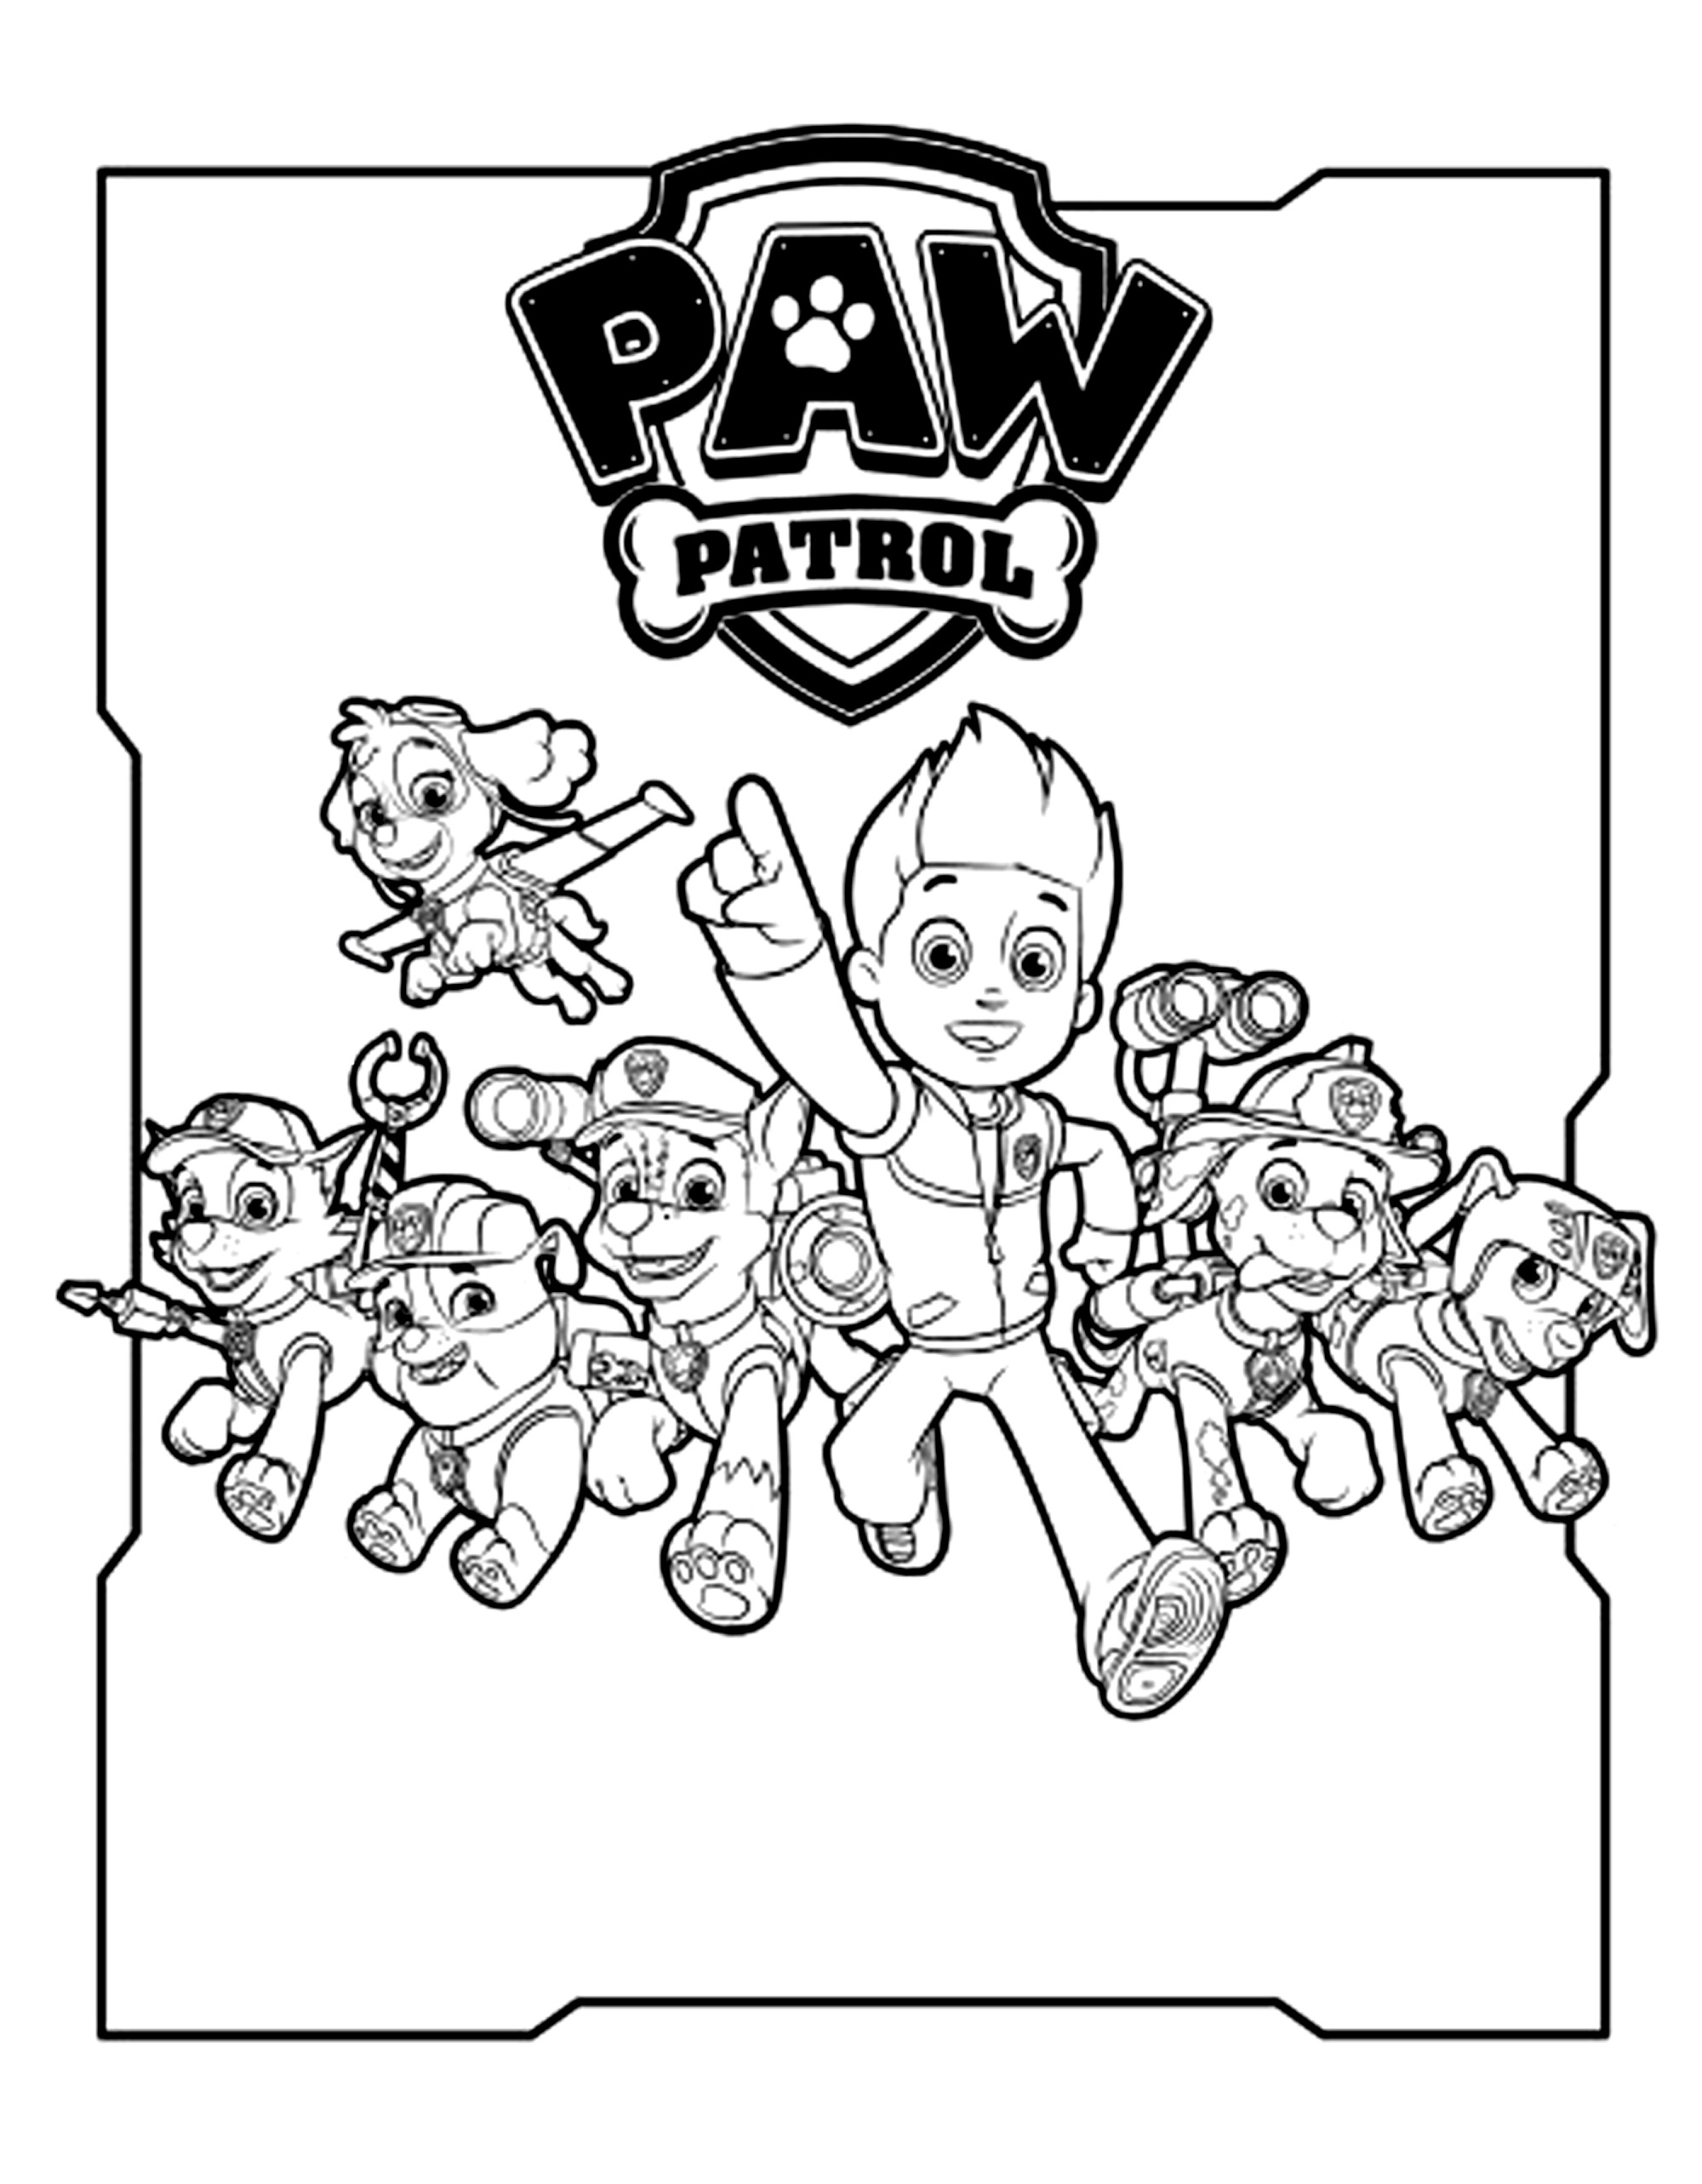 La PAW Patrol, Patrulla de cachorros al completo, ¡encabezada por Ryder!